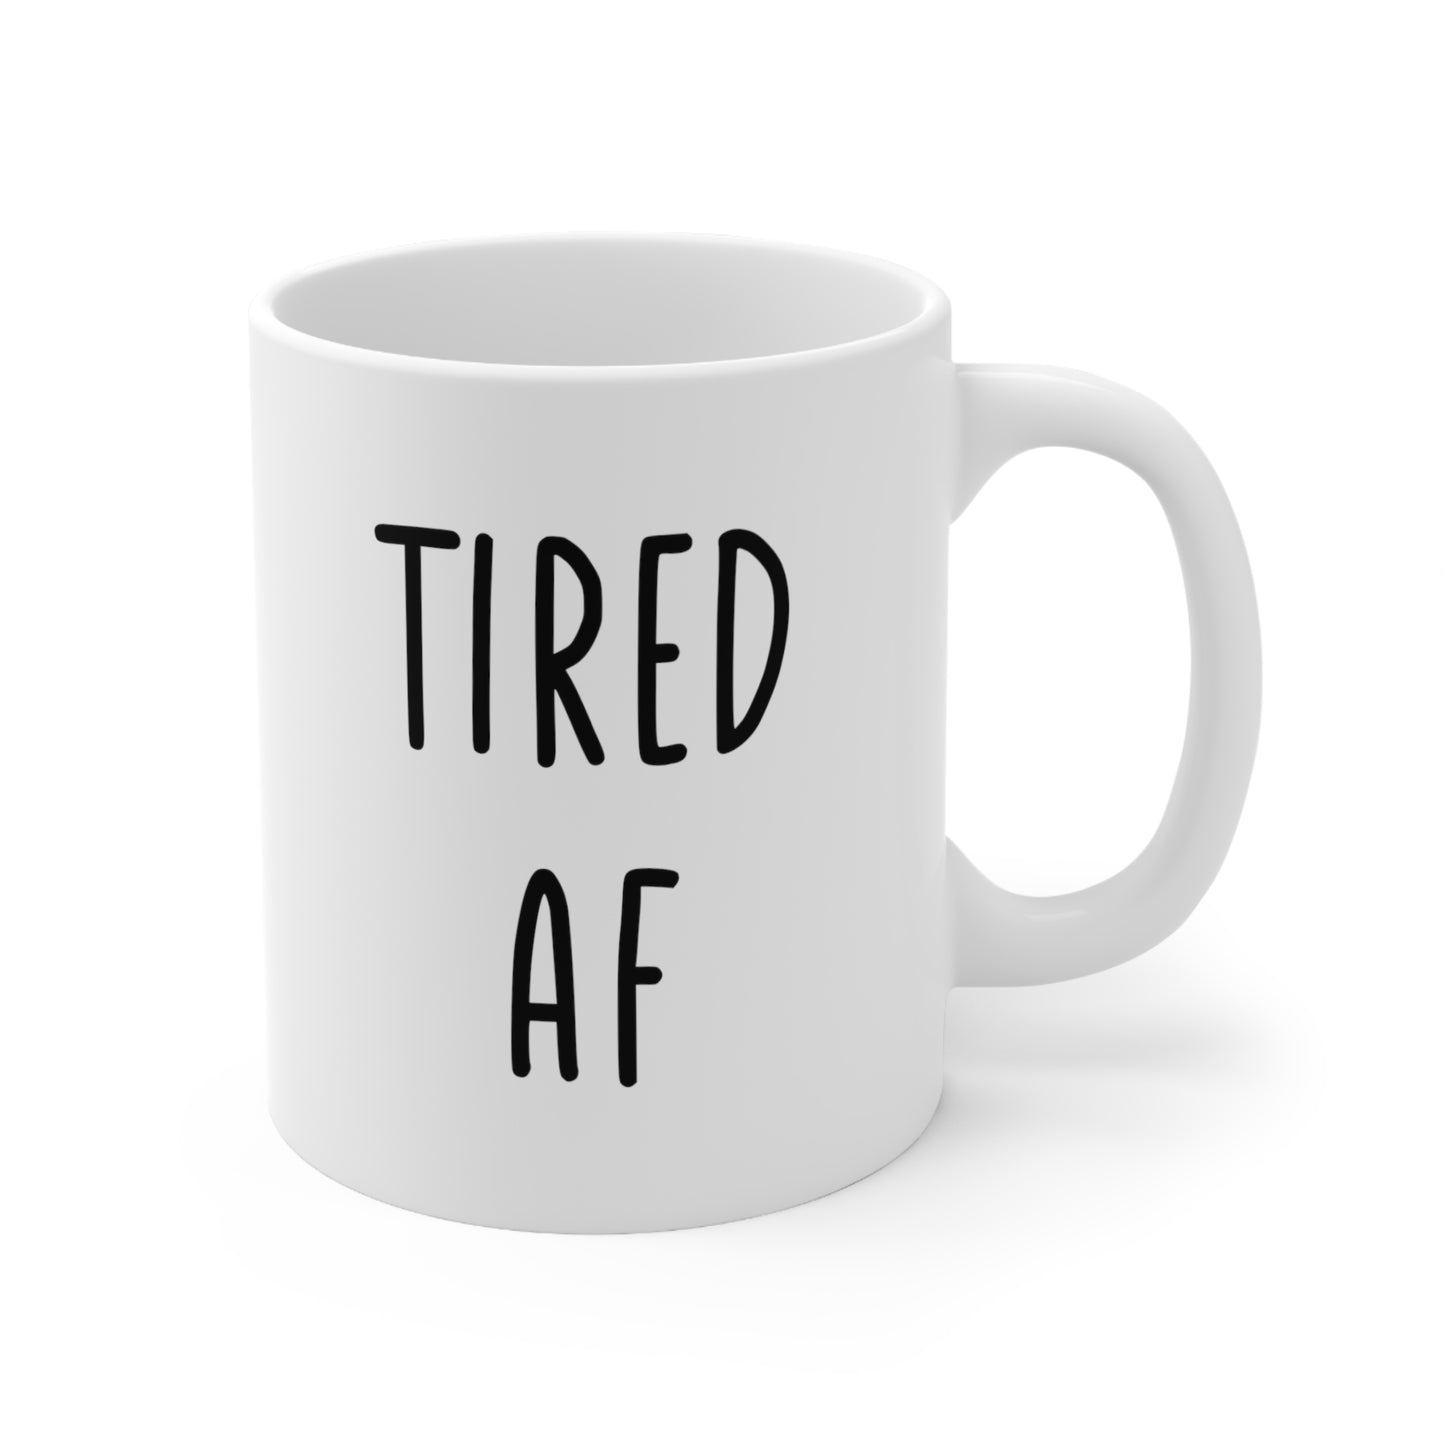 Tired AF Coffee Mug 11oz